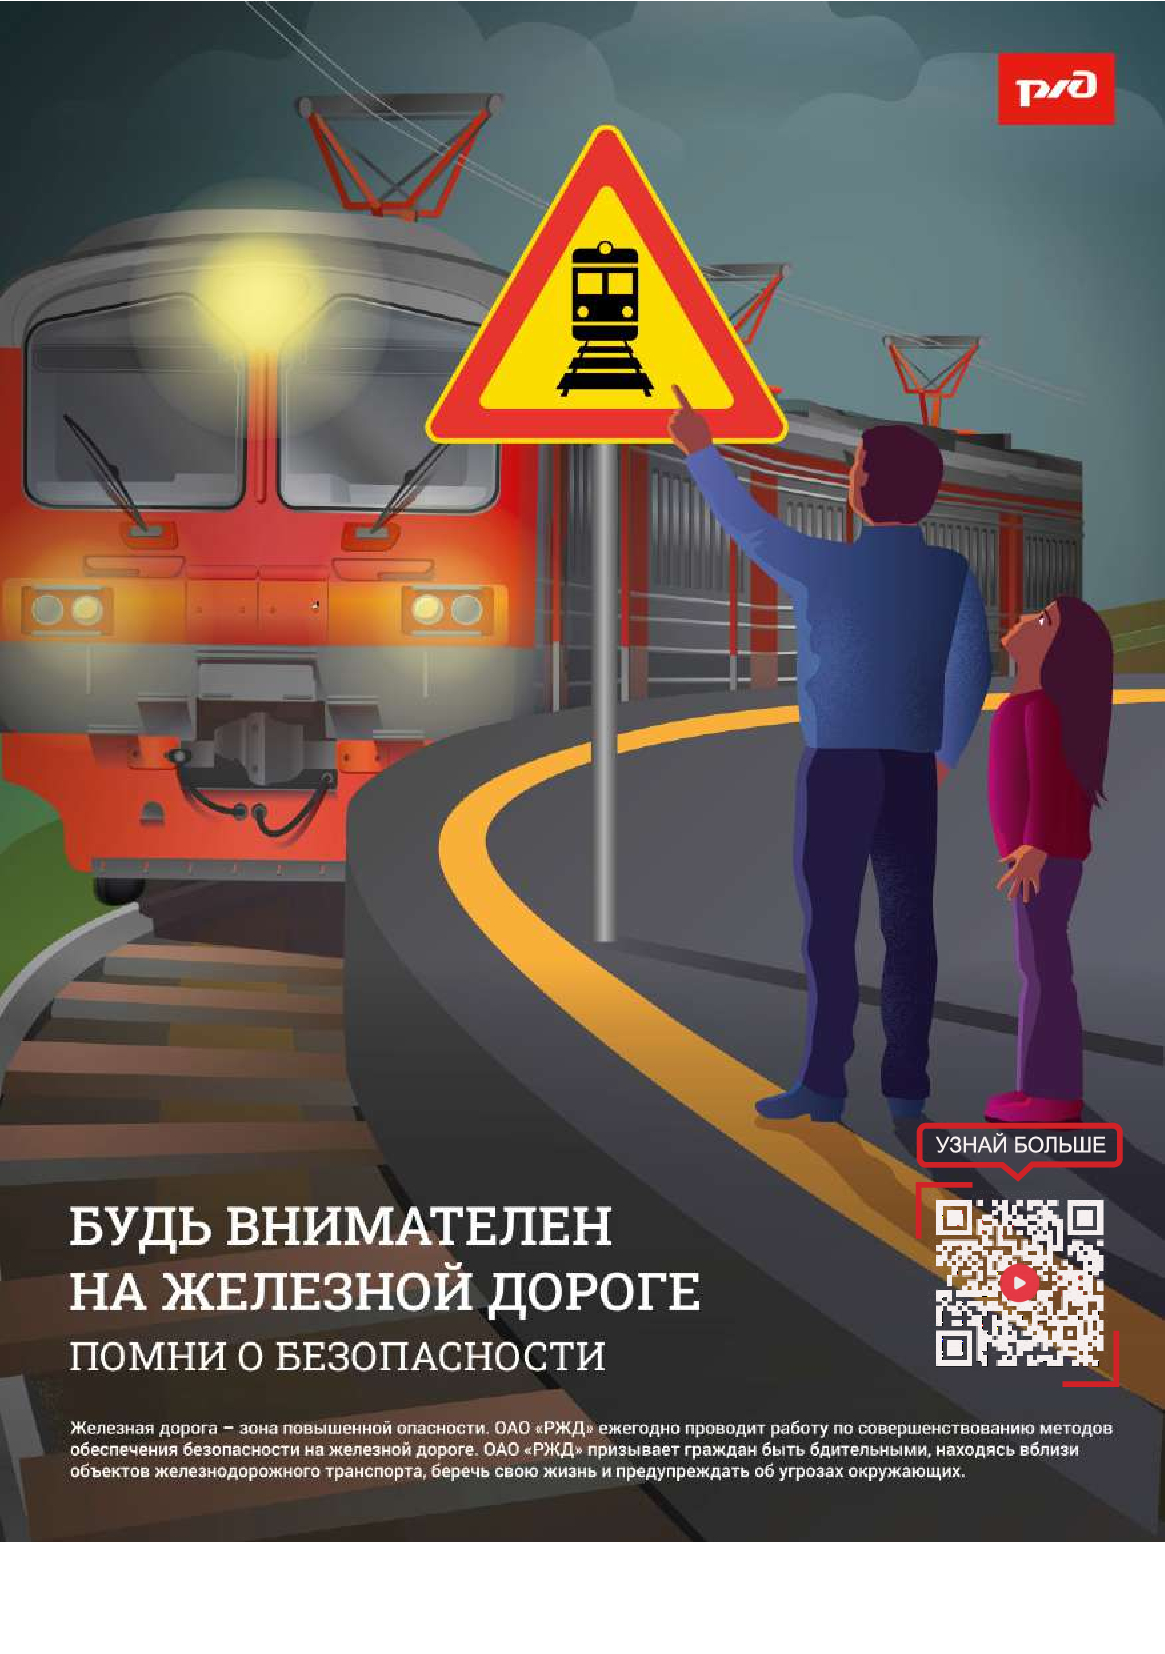 "Безопасность на железнодорожном транспорте".